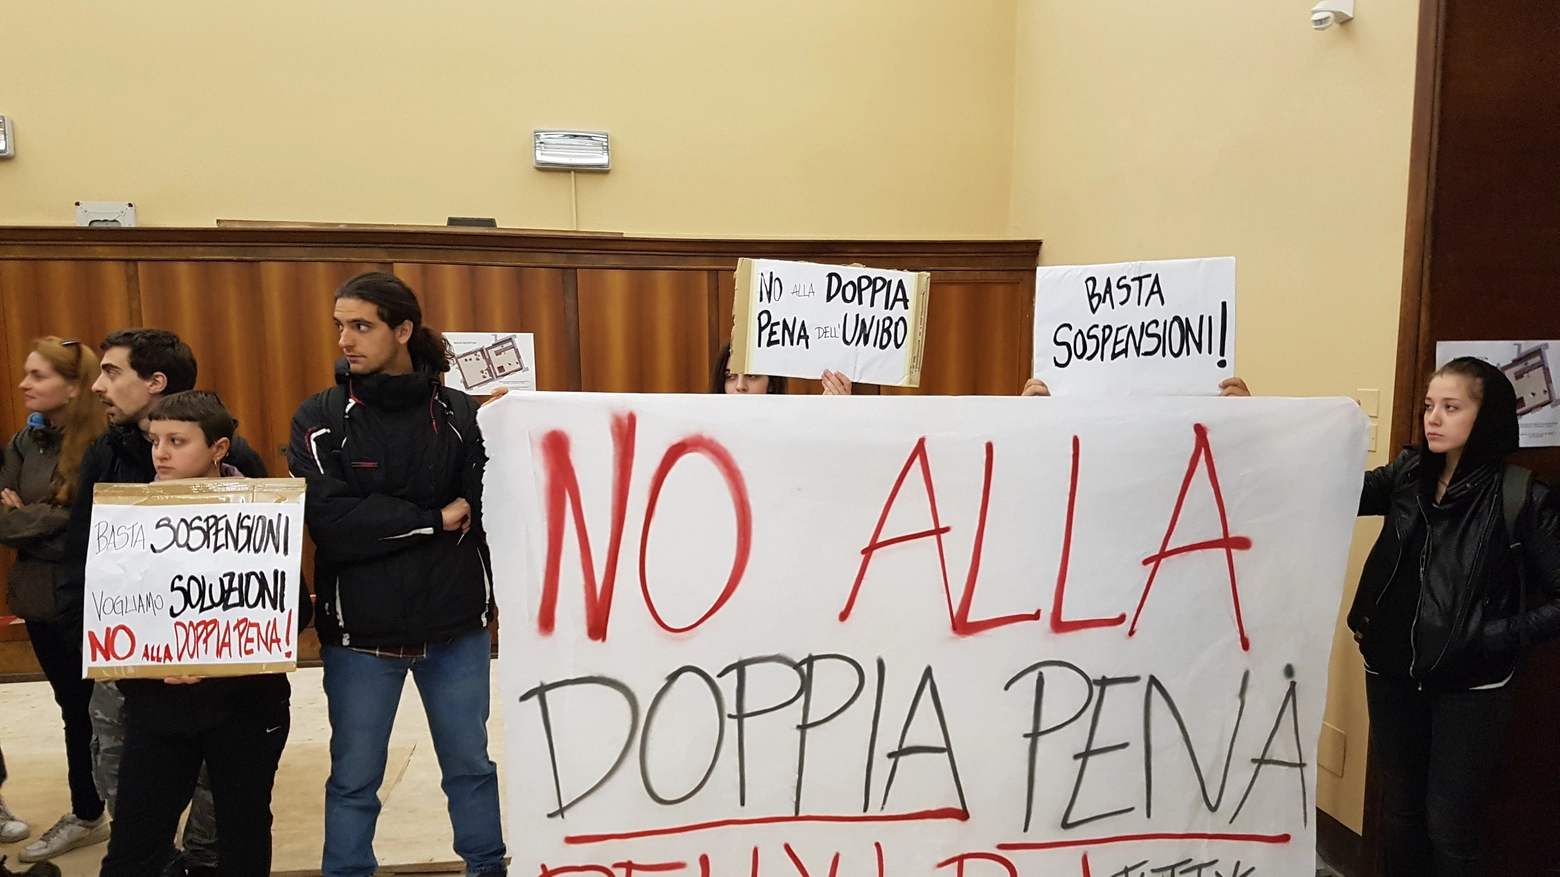 La protesta dei collettivi in Rettorato a Bologna